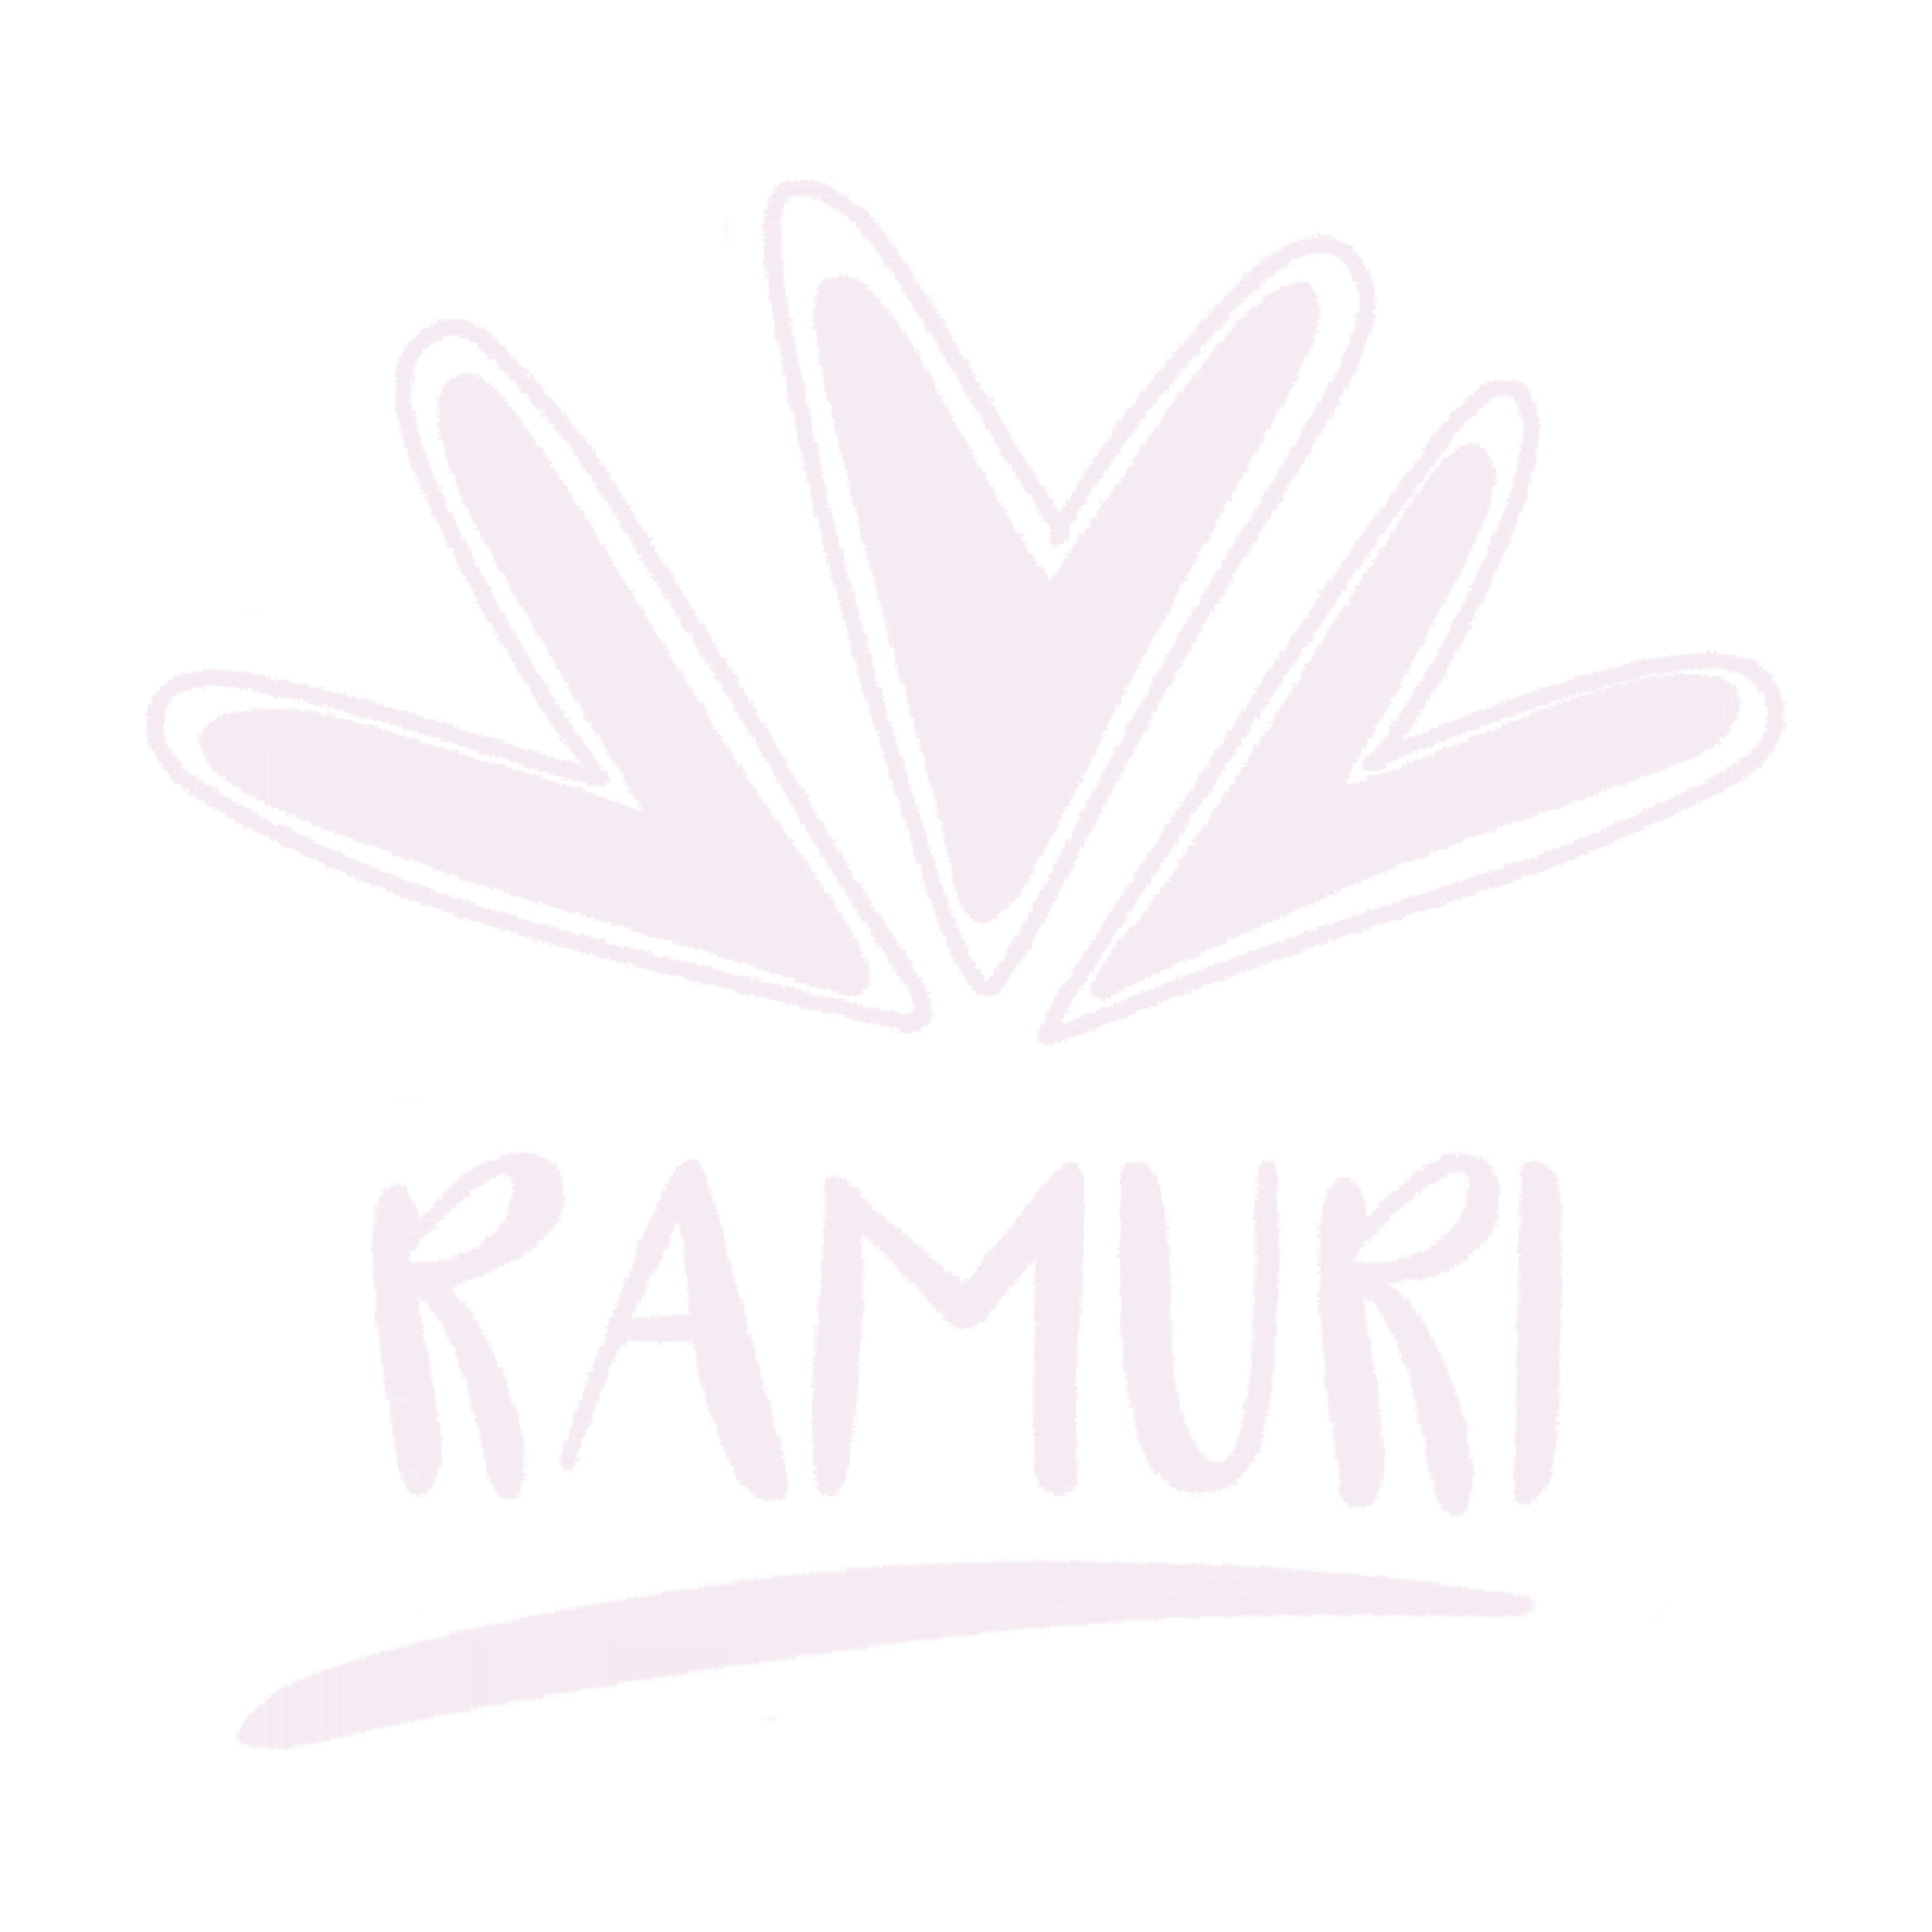 Ramuri